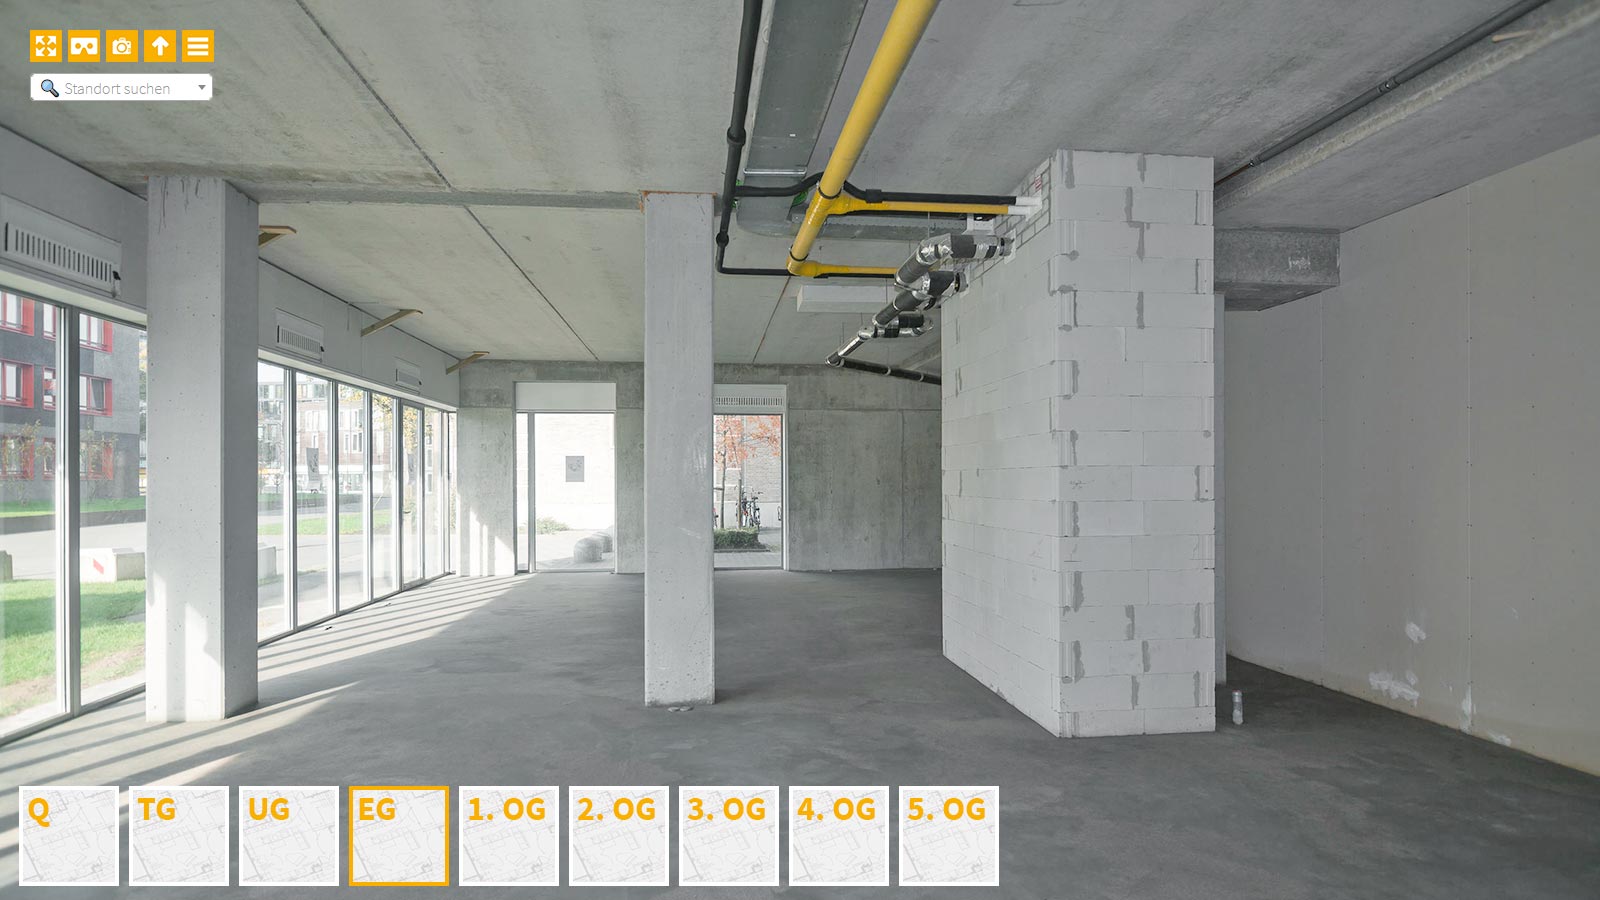 Baudokumentation 360 Grad bei gestörten Projekten in 


	


	


	


	


	


	


	


	


	


	Bottrop









, Bilddokumentation als virtueller Rundgang